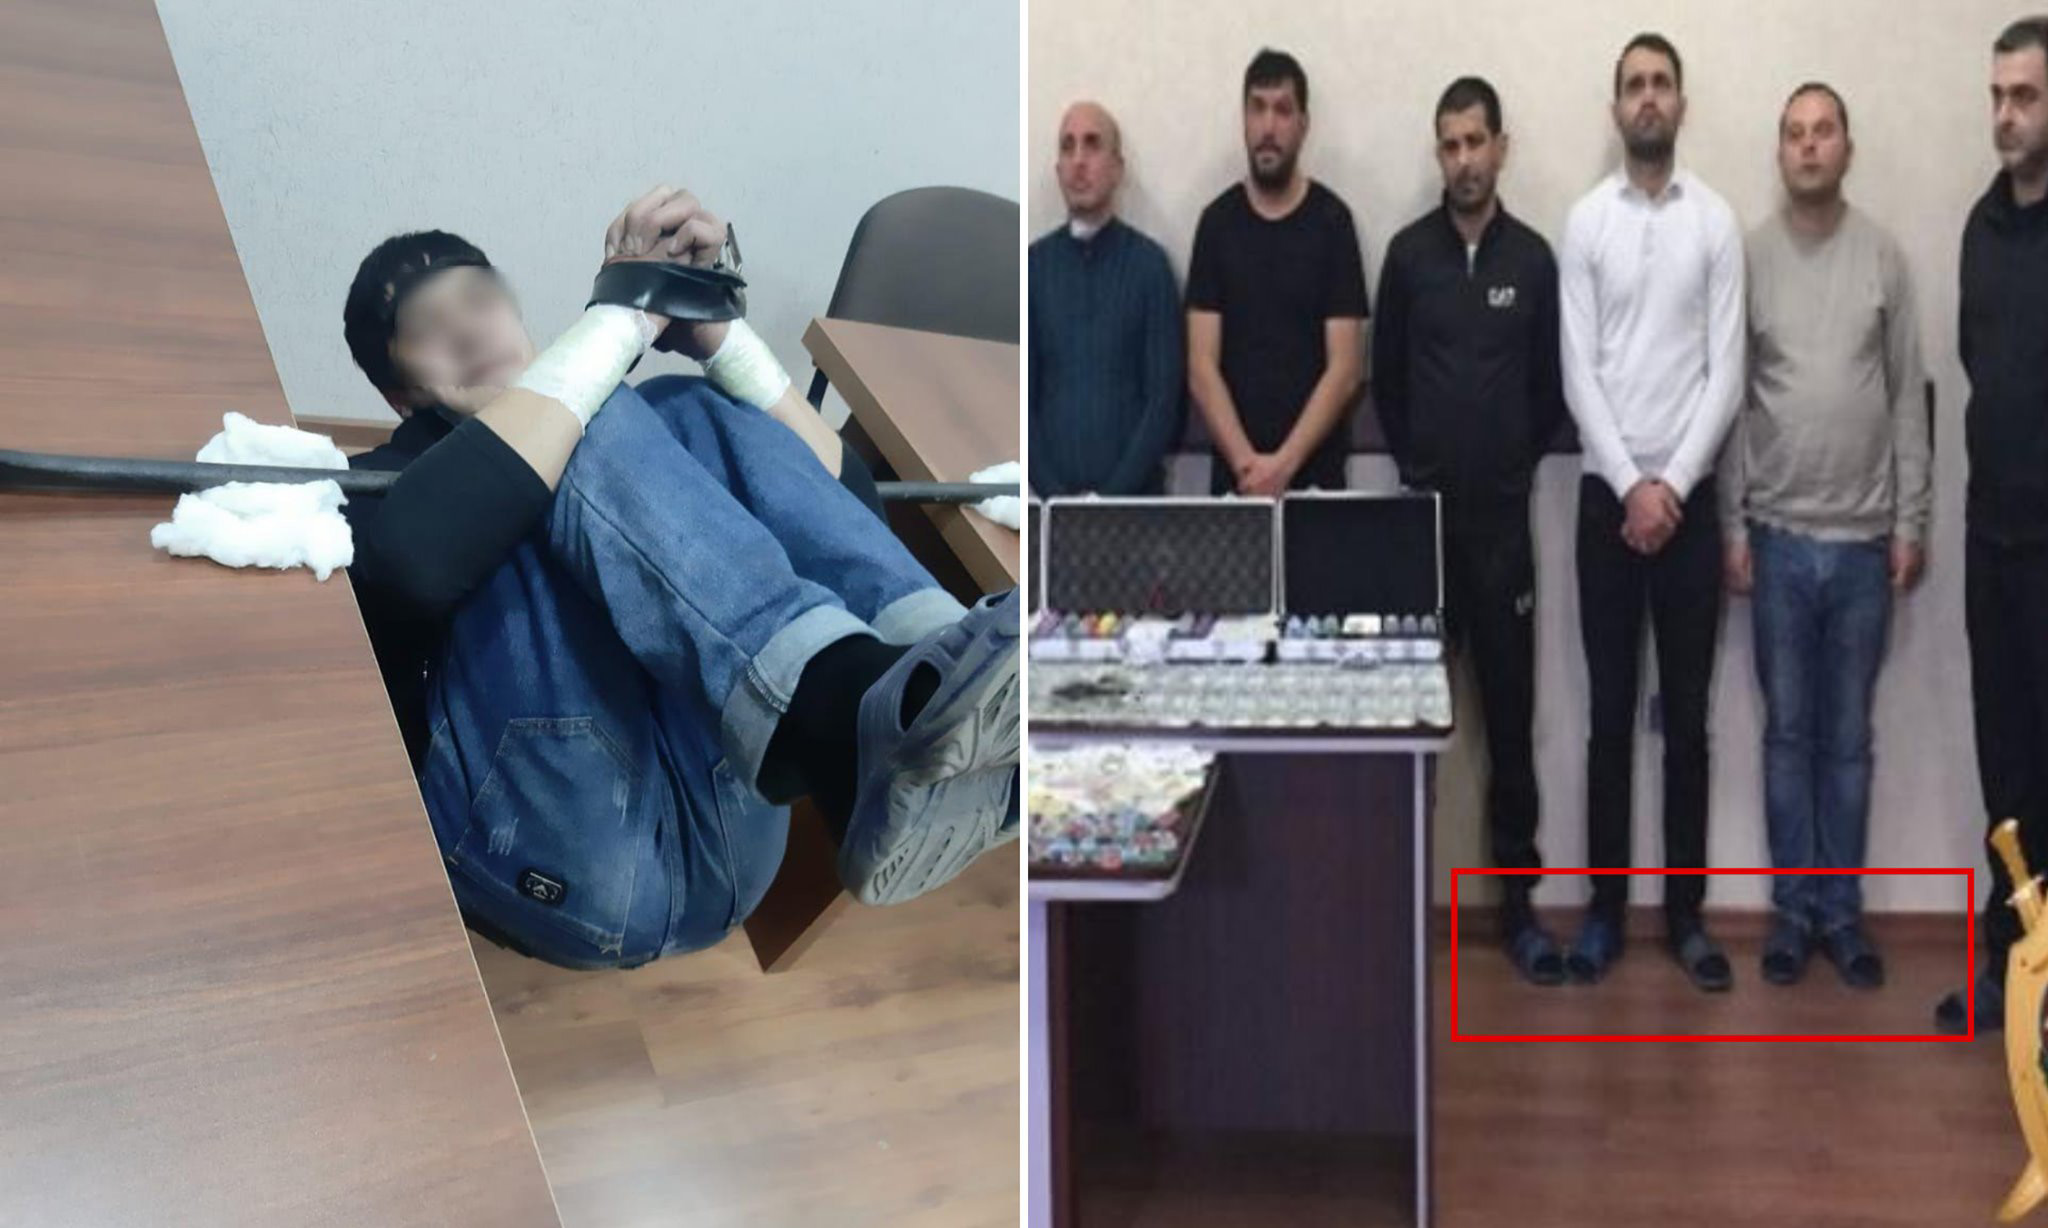 Мунтазир отметил, что тапочки на последних фотографиях были похожи на те, что выдаются задержанным в отделении полиции в Азербайджане. Фото: Хабиб Мунтазир